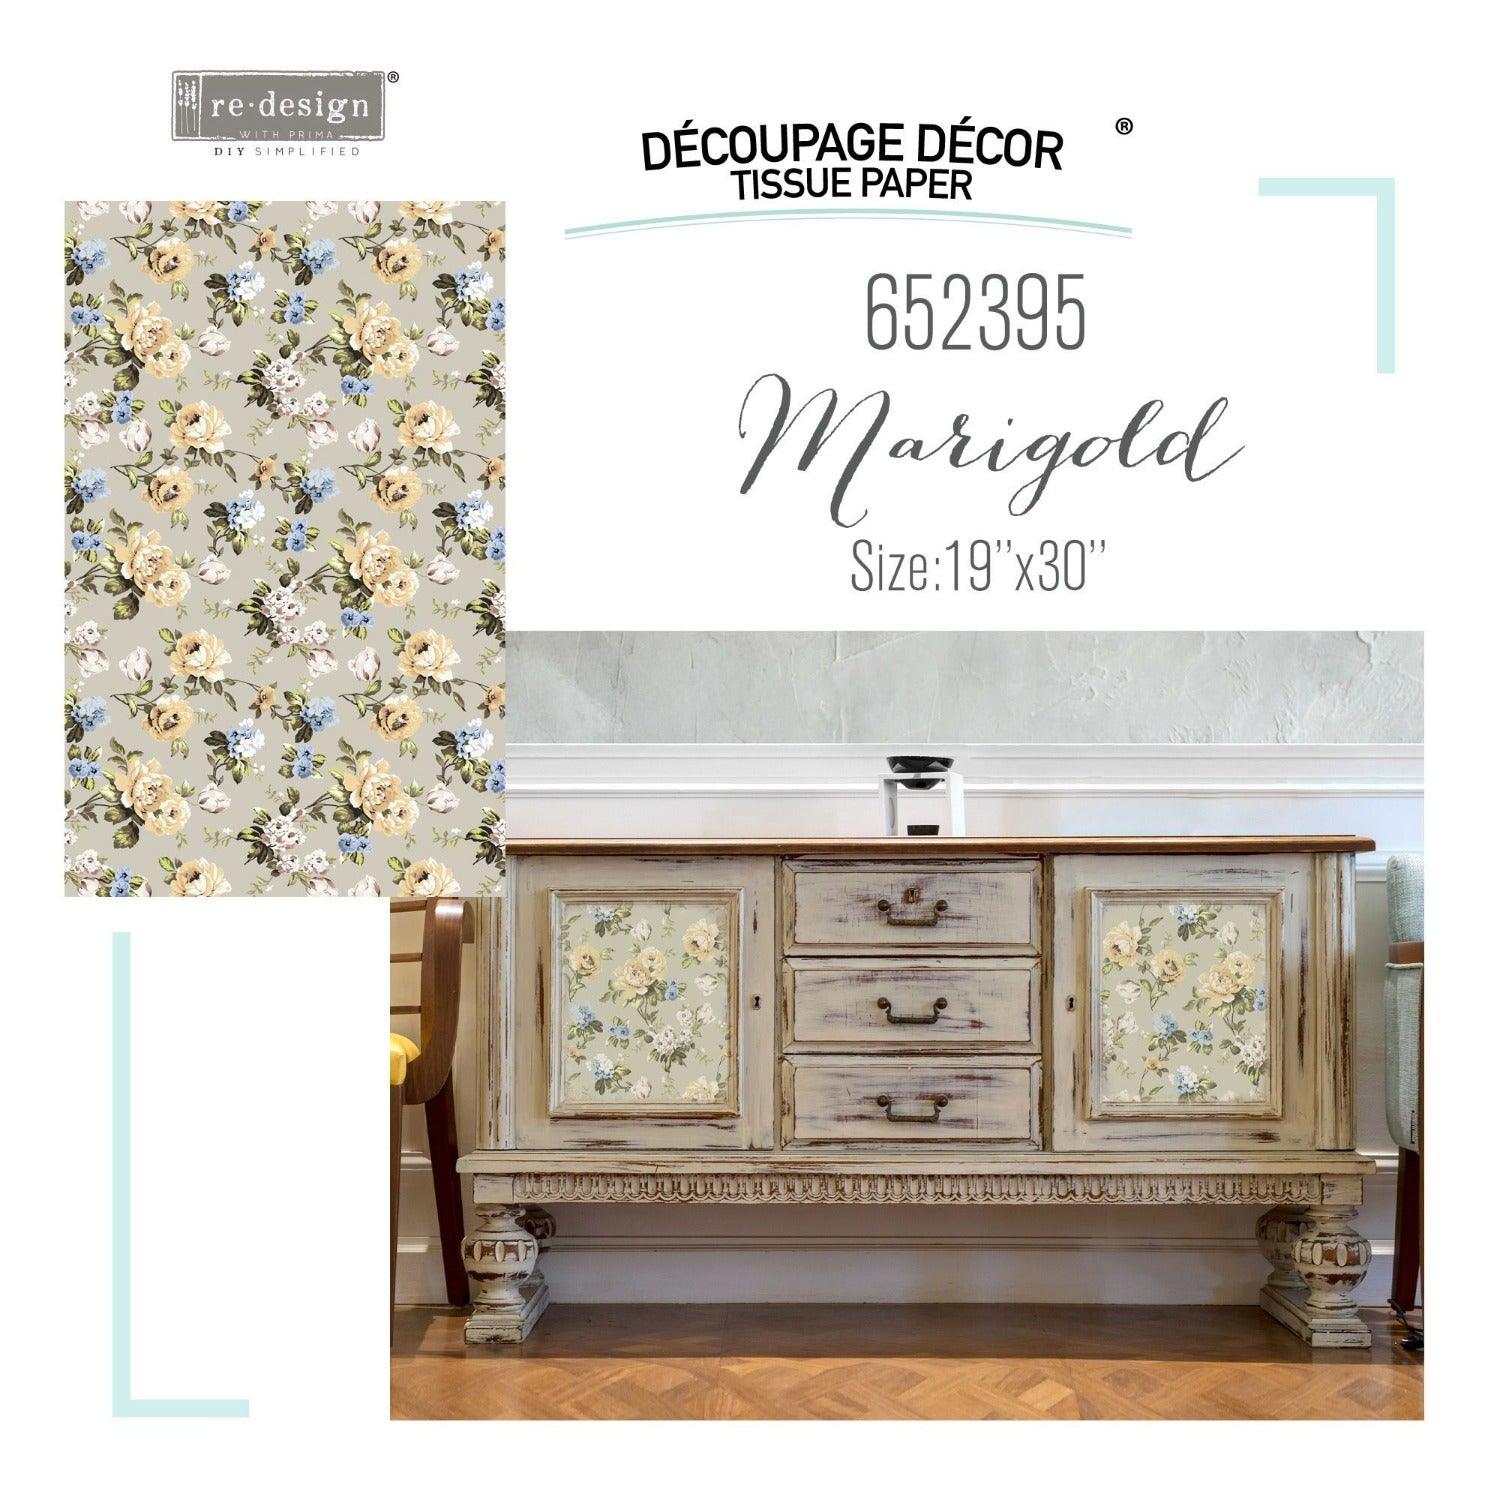 Redesign_Decoupage_Decor_Tissue_Paper_Marigold_deutschland_online